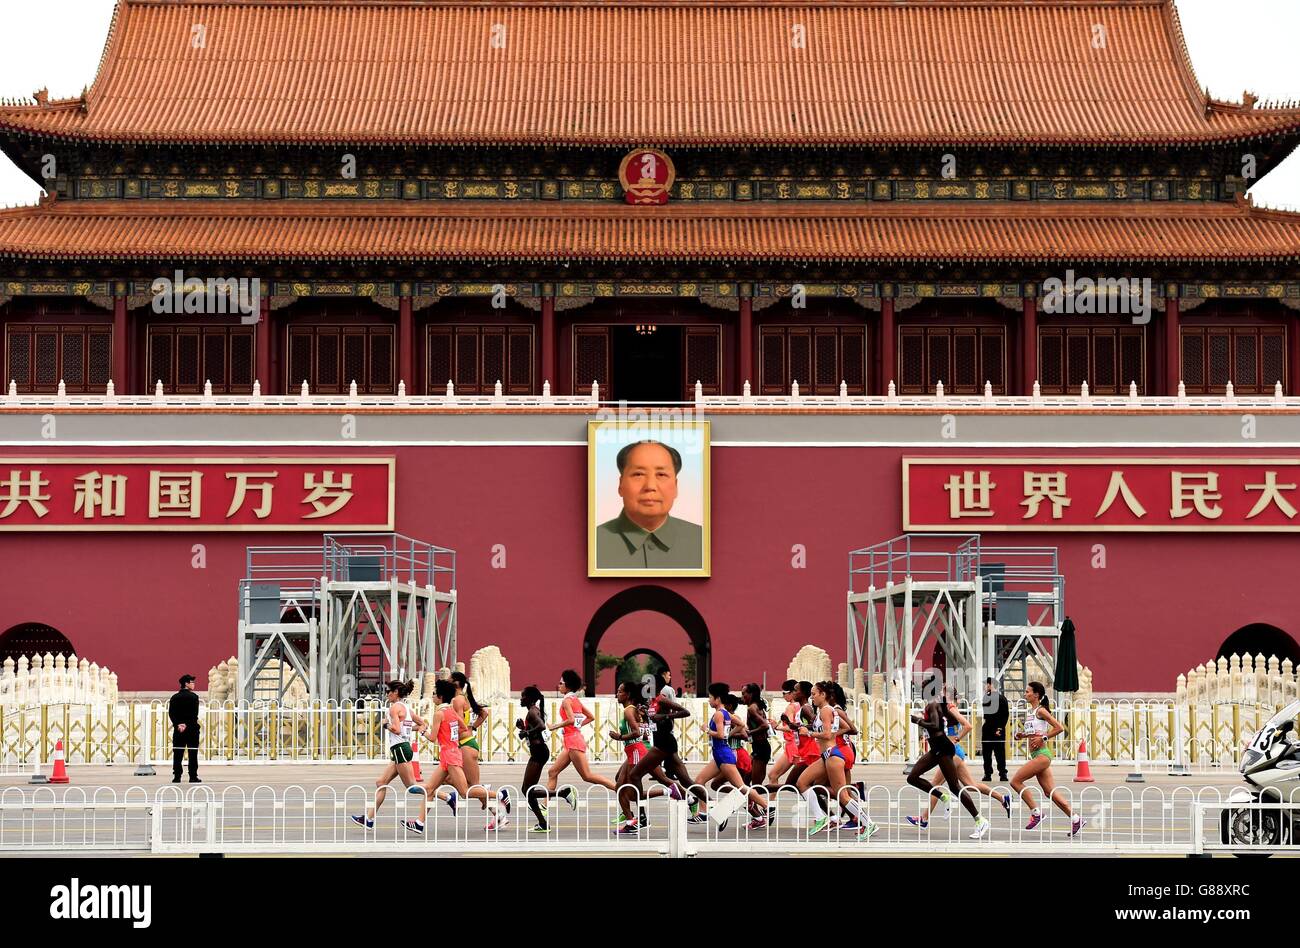 La Maratona delle Donne passa accanto alla "porta della pace celeste" con un ritratto del Presidente Mao durante il 9° giorno dei Campionati del mondo IAAF allo Stadio Nazionale di Pechino, in Cina. Foto Stock